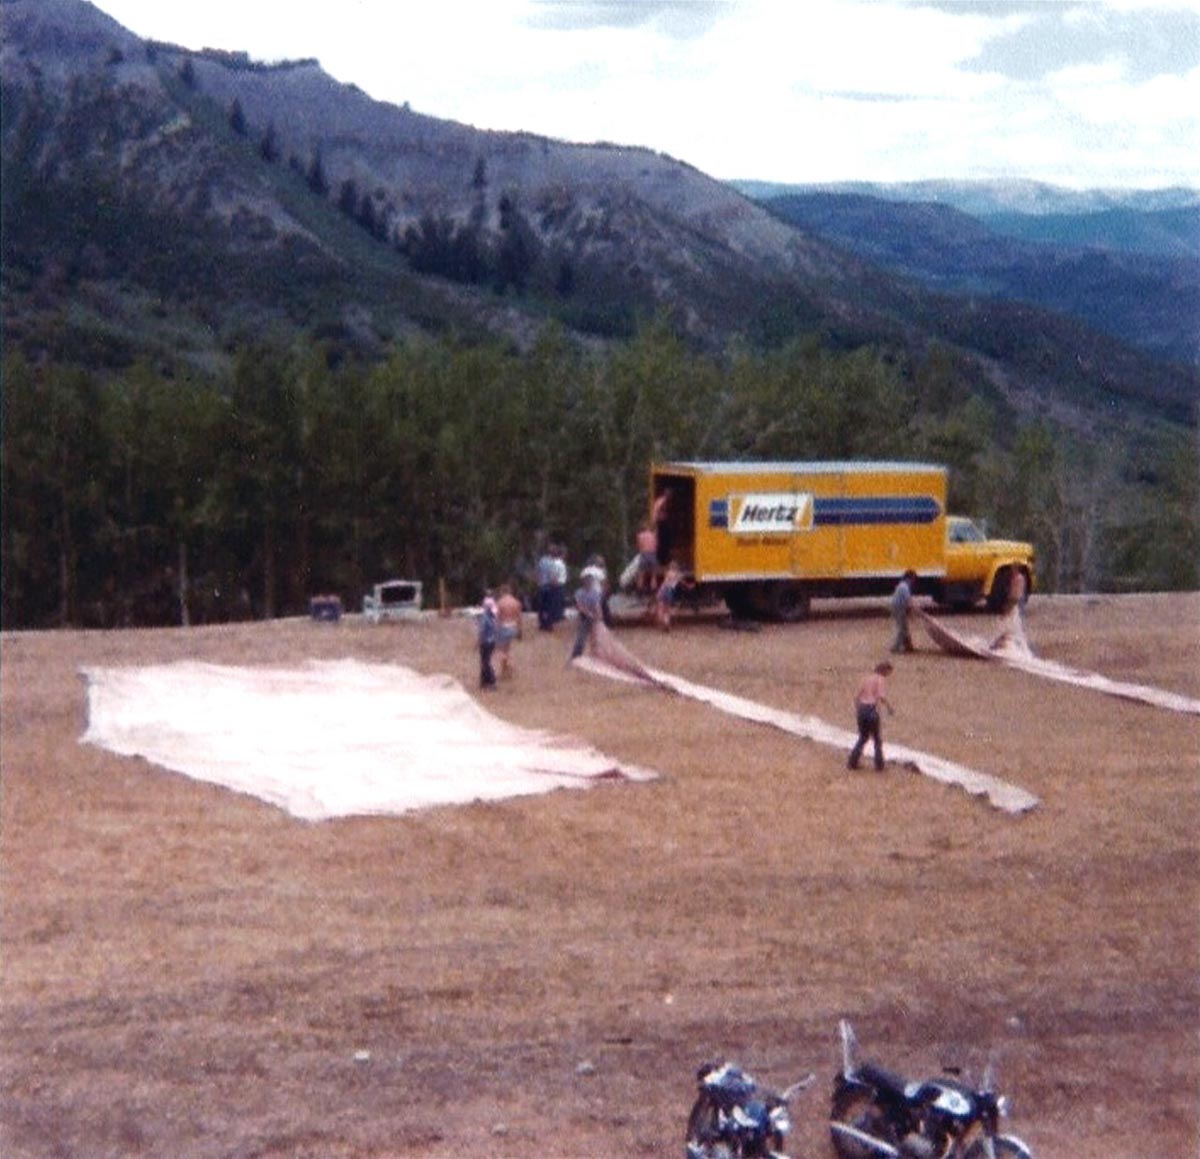 Settng up the Colorado Chautauqua Tent